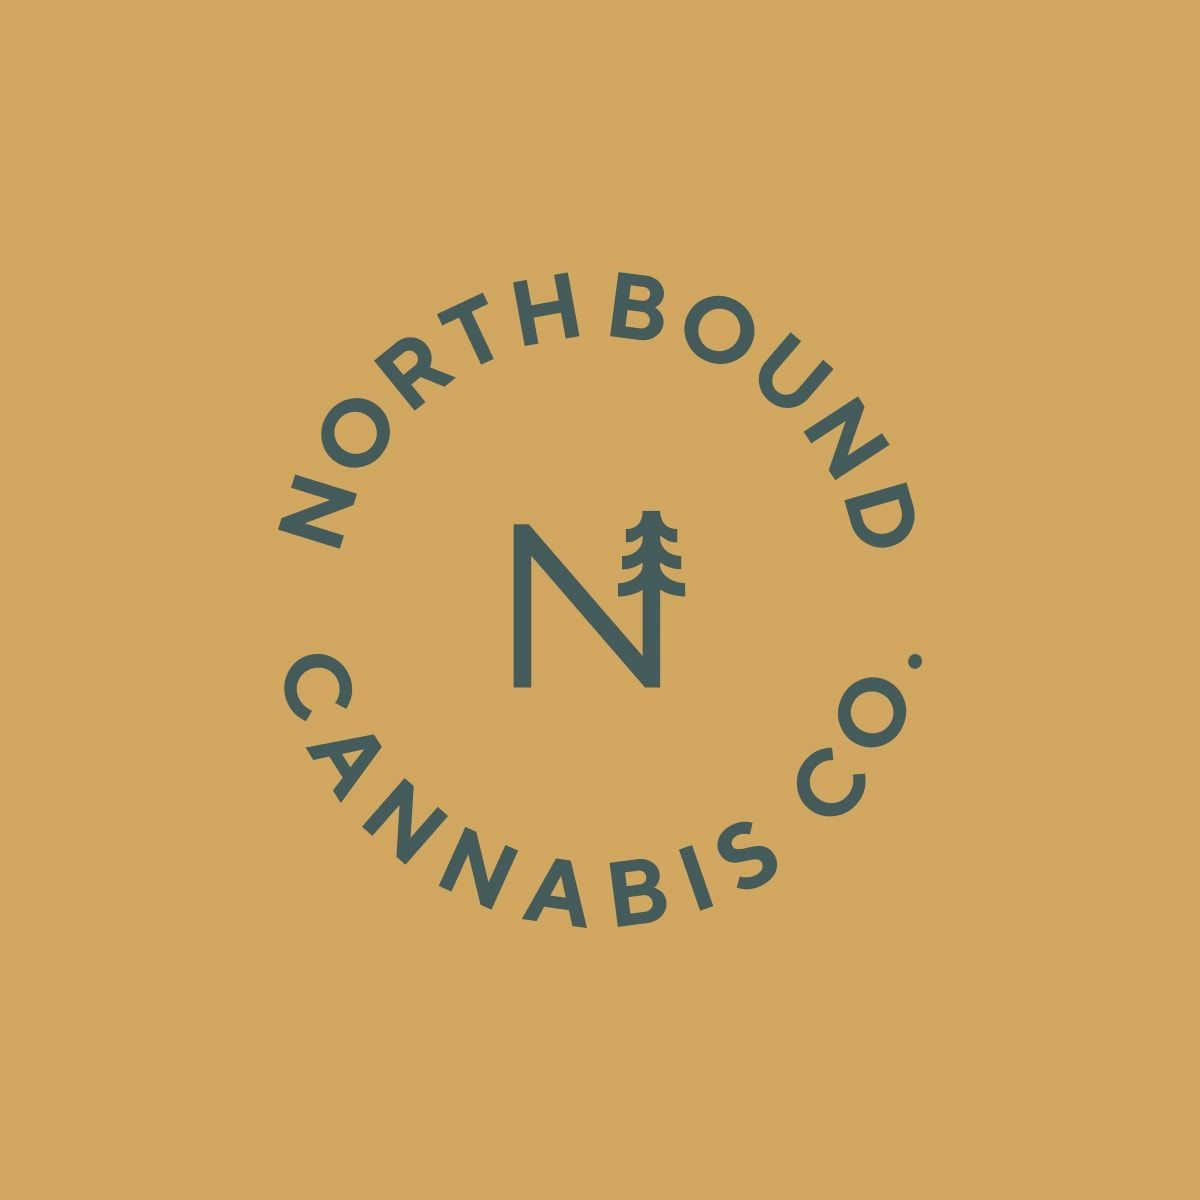 Northbound Cannabis Co. brand